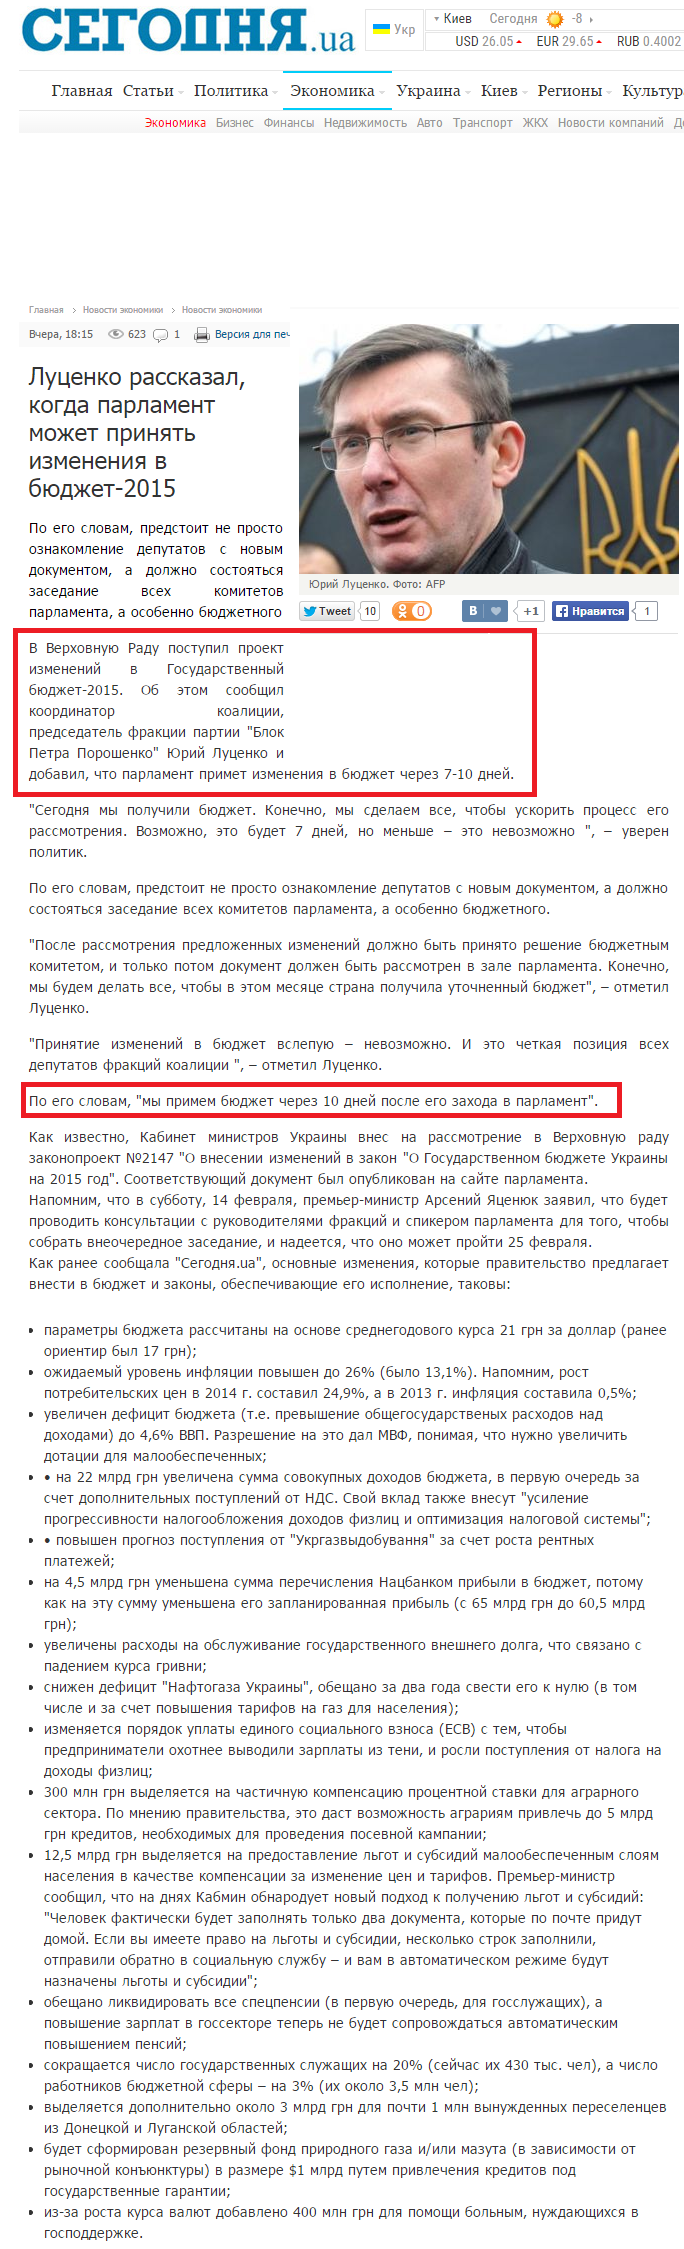 http://www.segodnya.ua/economics/enews/lucenko-rasskazal-kogda-parlament-mozhet-prinyat-izmeneniya-v-byudzhet-2015-593132.html